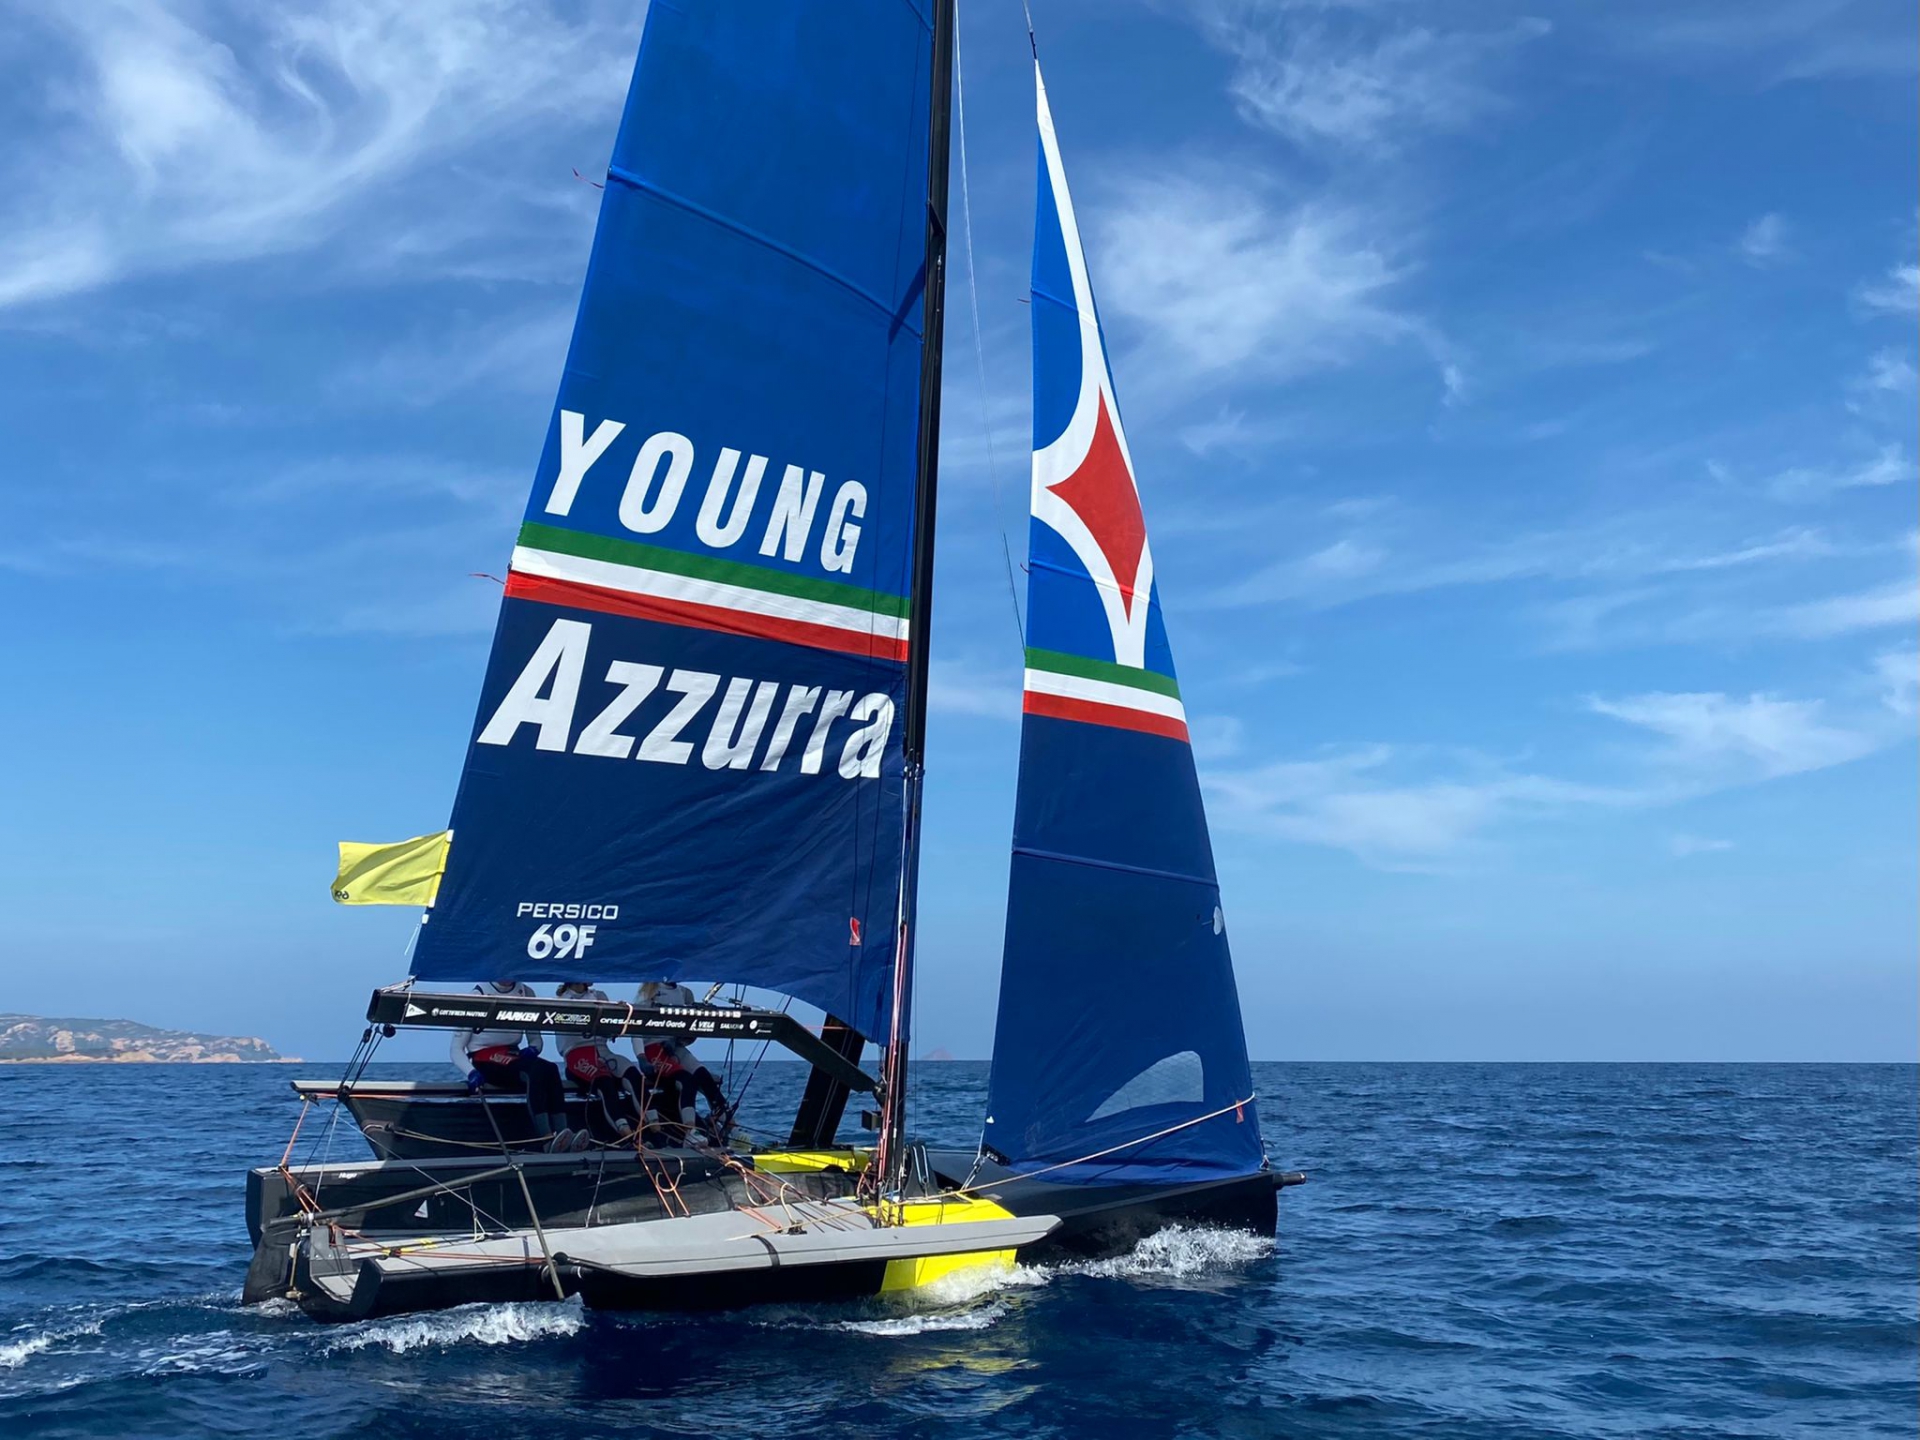 Nulla di fatto per la prima giornata del Grand Prix 4.1 Persico 69F Cup - NEWS - Yacht Club Costa Smeralda